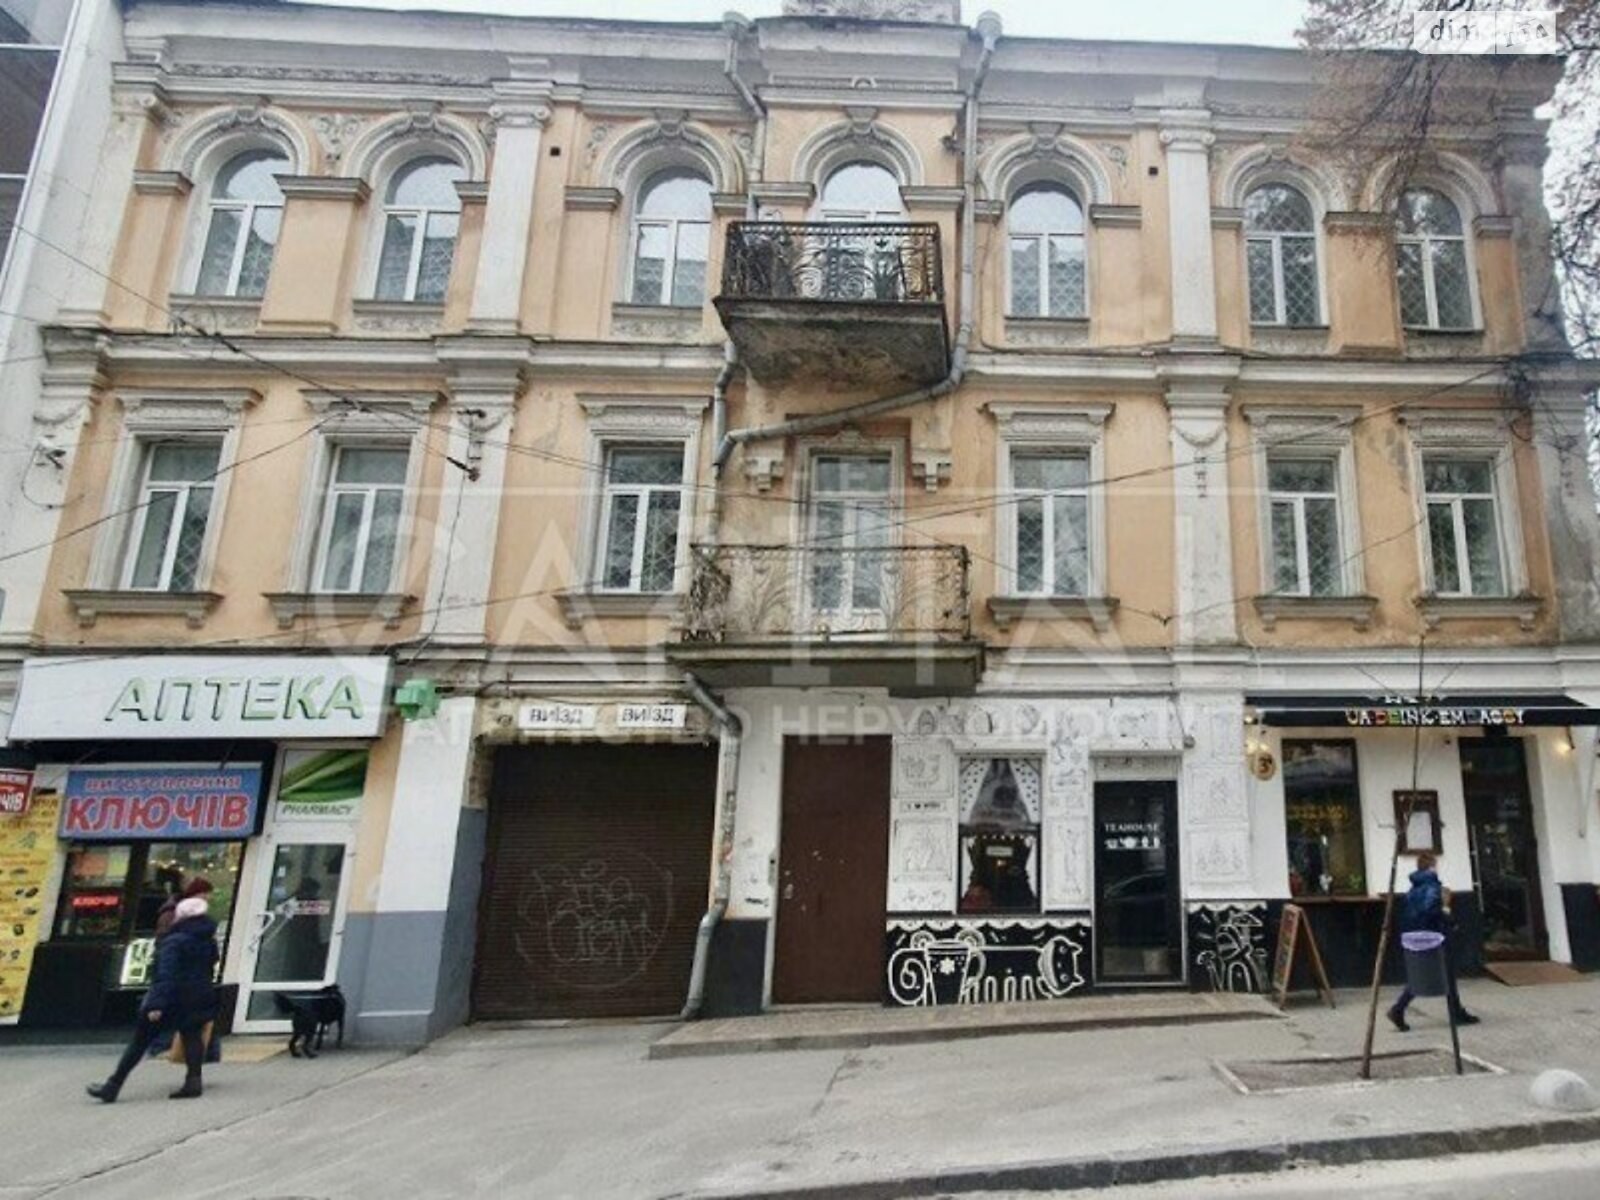 Аренда офисного помещения в Киеве, Софиевская улица 3, помещений - 20, этаж - 1 фото 1